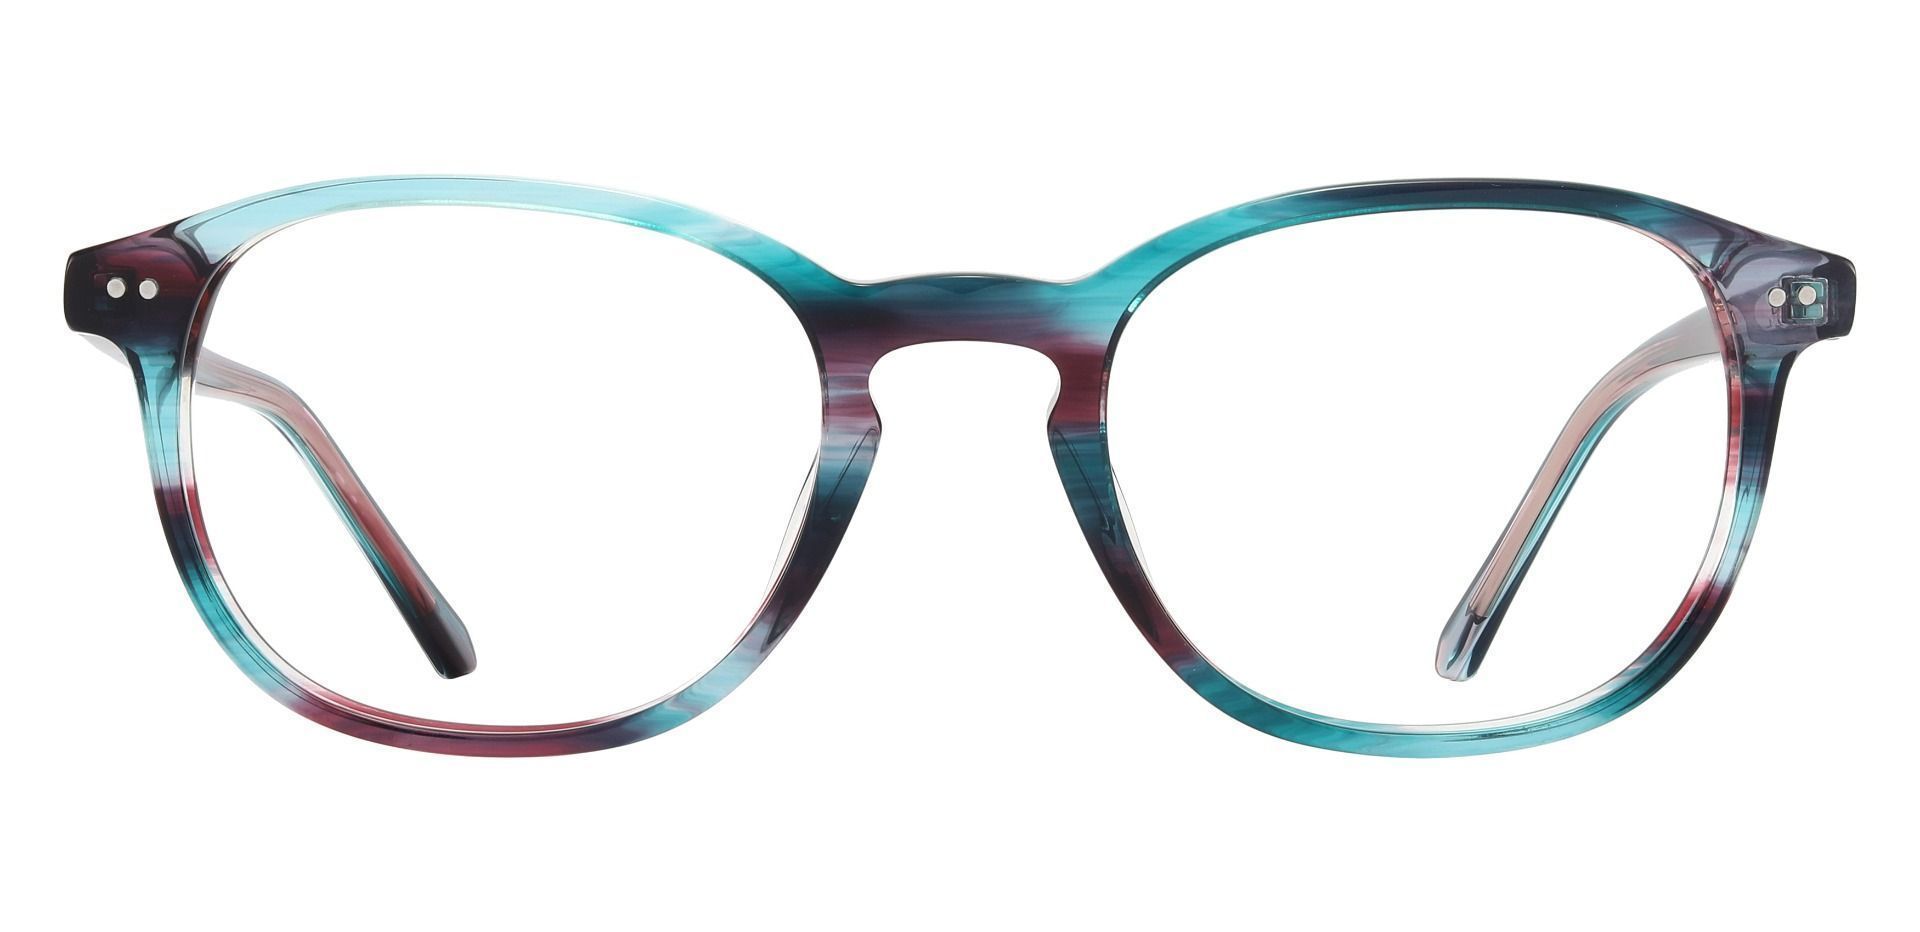 Arabella Oval Prescription Glasses - Blue